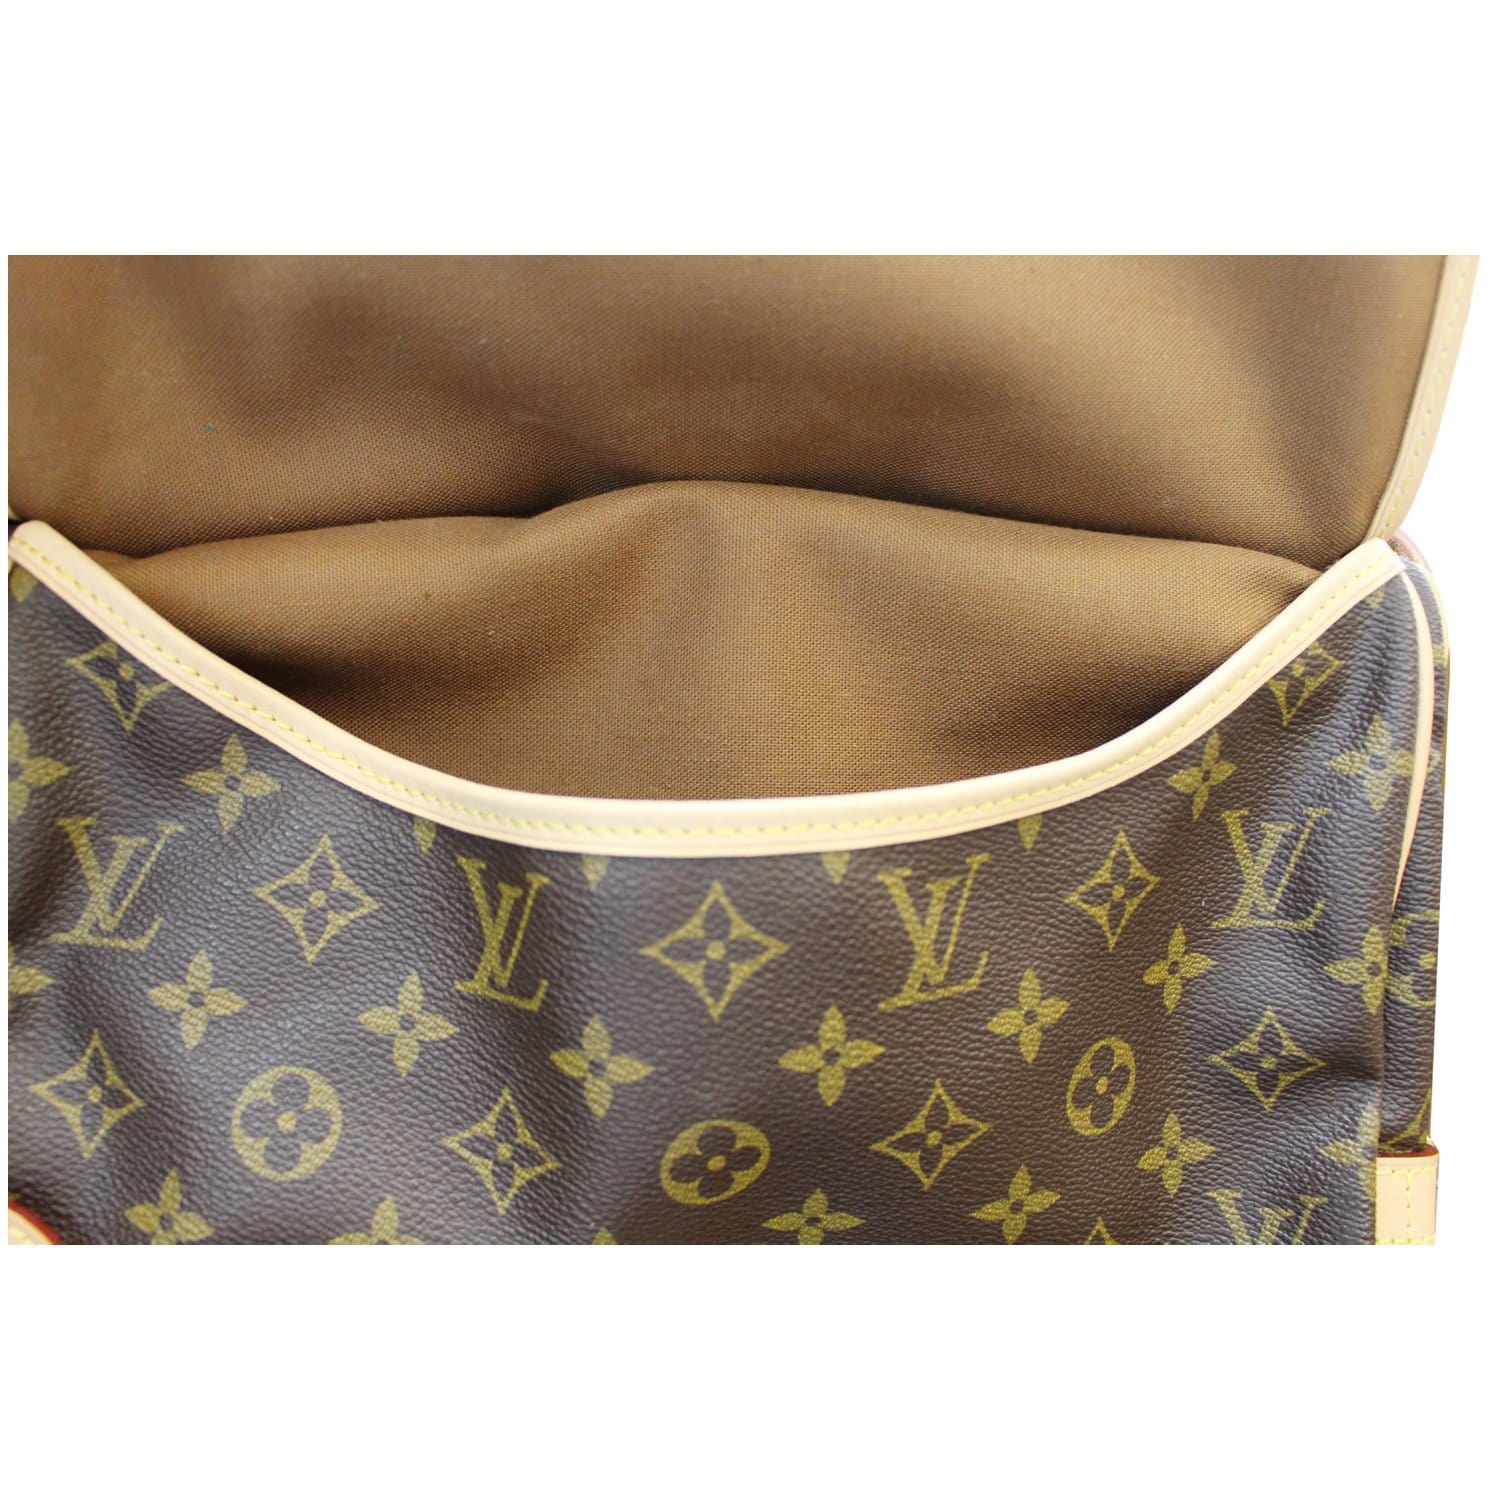 Saumur cloth 48h bag Louis Vuitton Brown in Cloth - 30742388